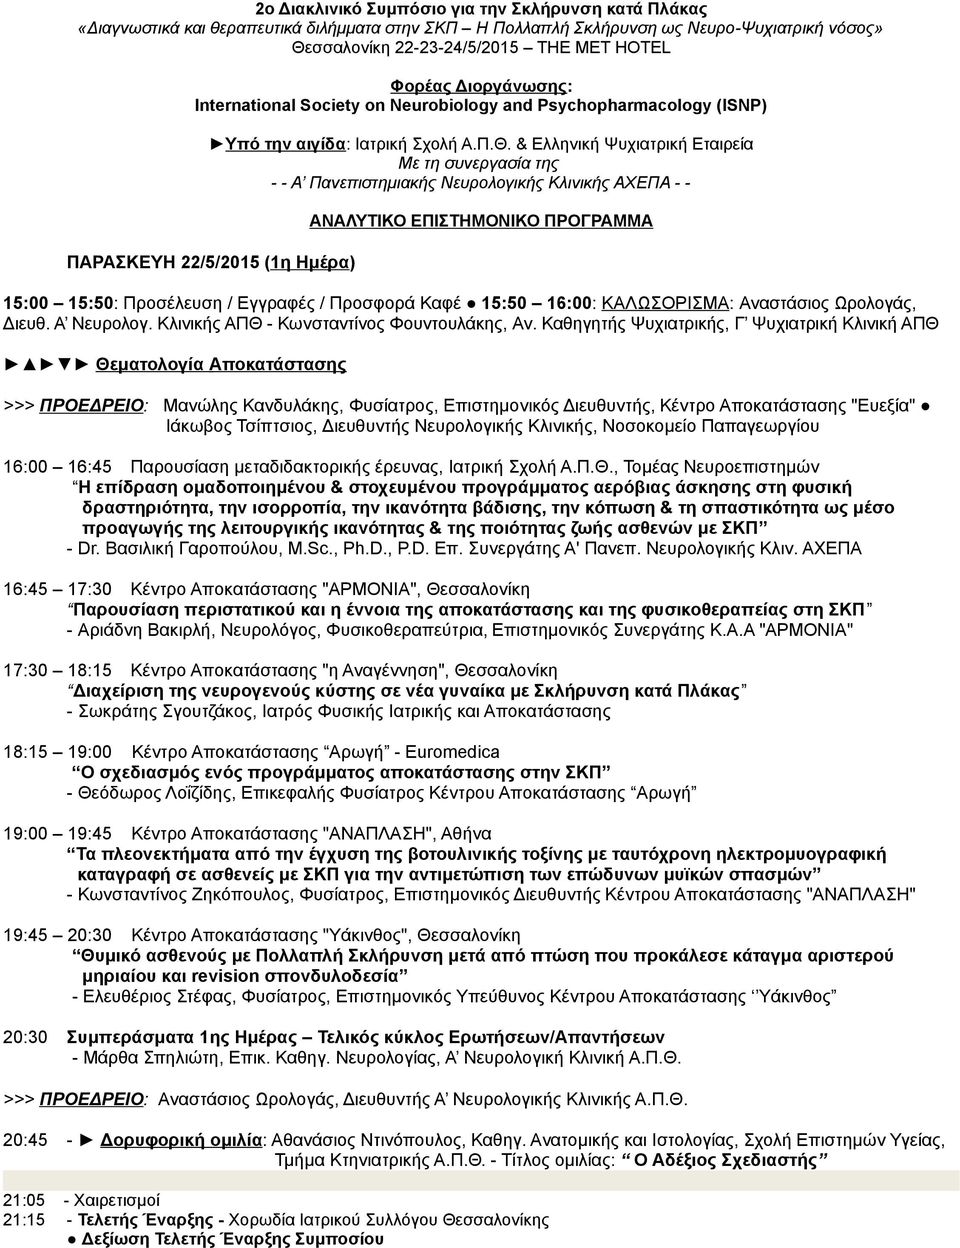 & Ελληνική Ψυχιατρική Εταιρεία Με τη συνεργασία της - - Α Πανεπιστημιακής Νευρολογικής Κλινικής ΑΧΕΠΑ - - ΠΑΡΑΣΚΕΥΗ 22/5/2015 (1η Ημέρα) ΑΝΑΛΥΤΙΚΟ ΕΠΙΣΤΗΜΟΝΙΚΟ ΠΡΟΓΡΑΜΜΑ 15:00 15:50: Προσέλευση /